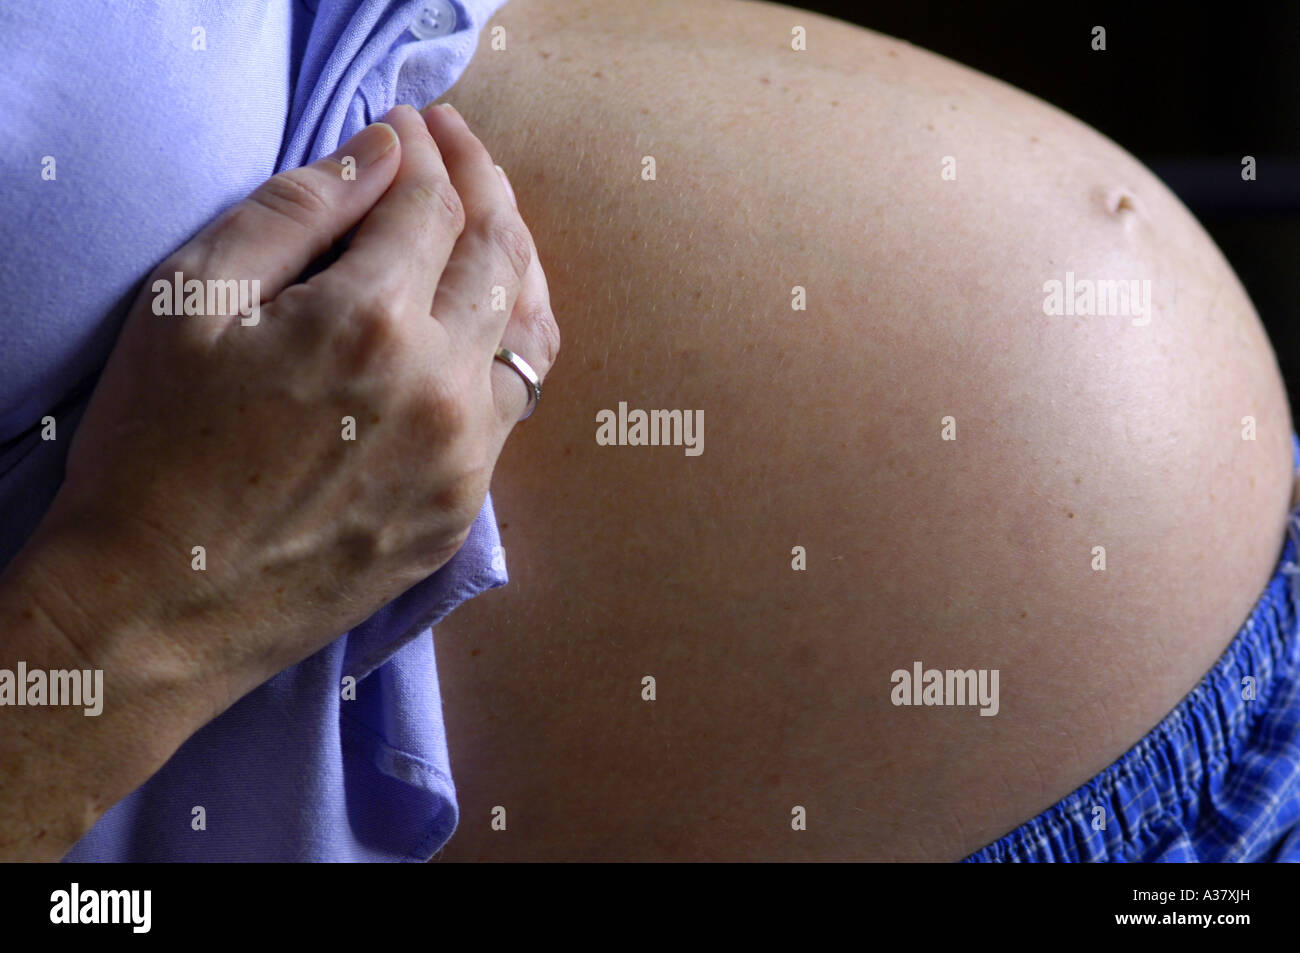 Grossesse enceinte femme bosse bébé ventre estomac naissance ...